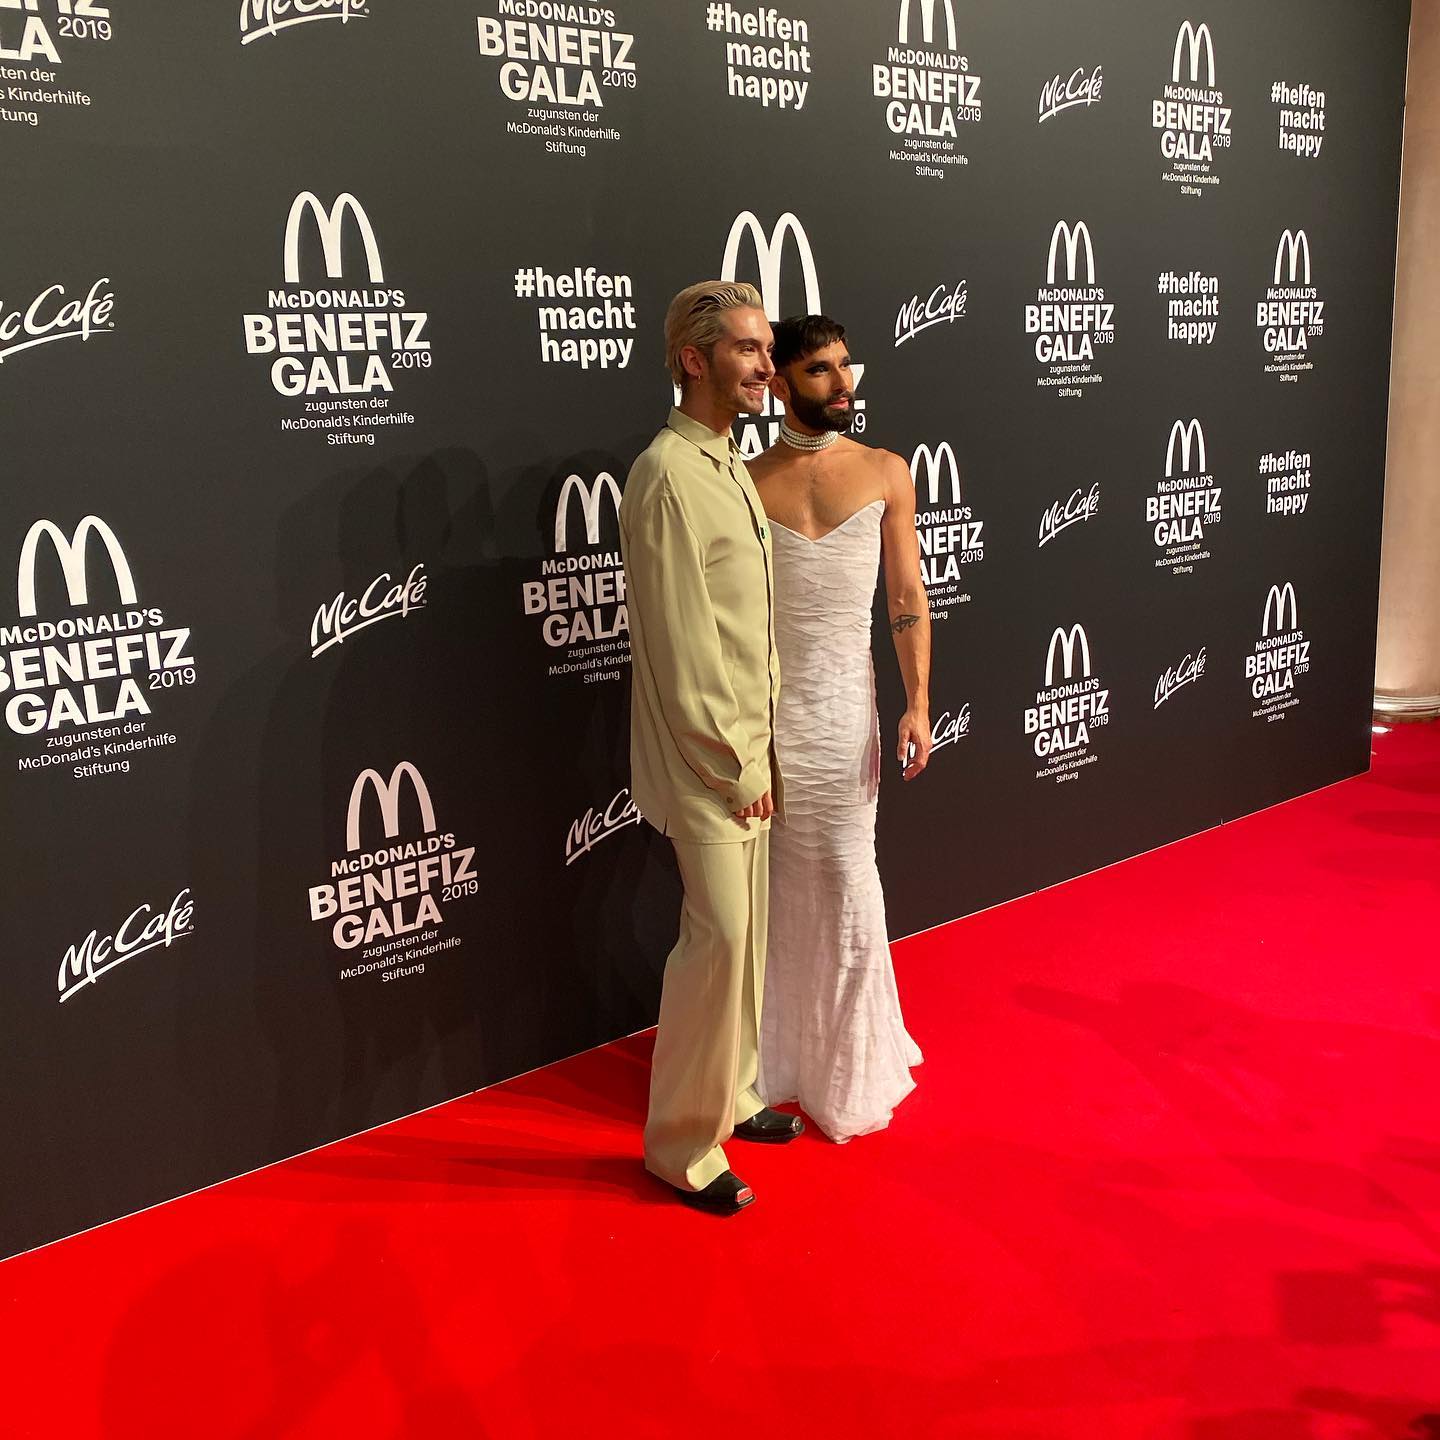 Ronald McDonald Charity Gala (Munich, 09.11.2019)